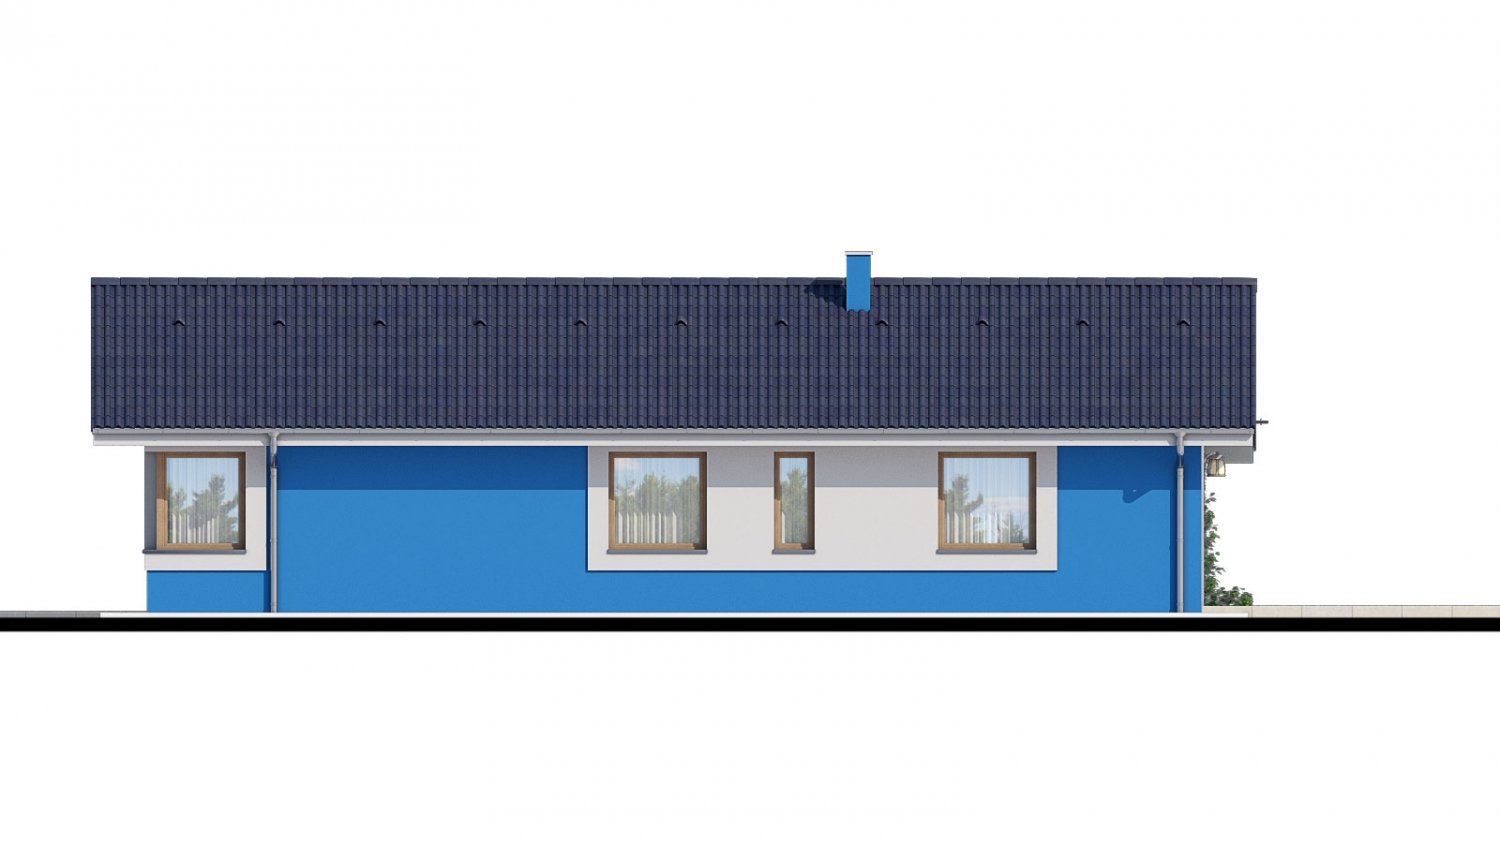 Zrkadlový pohľad 3. - 4-pokojový projekt domu s garáží.